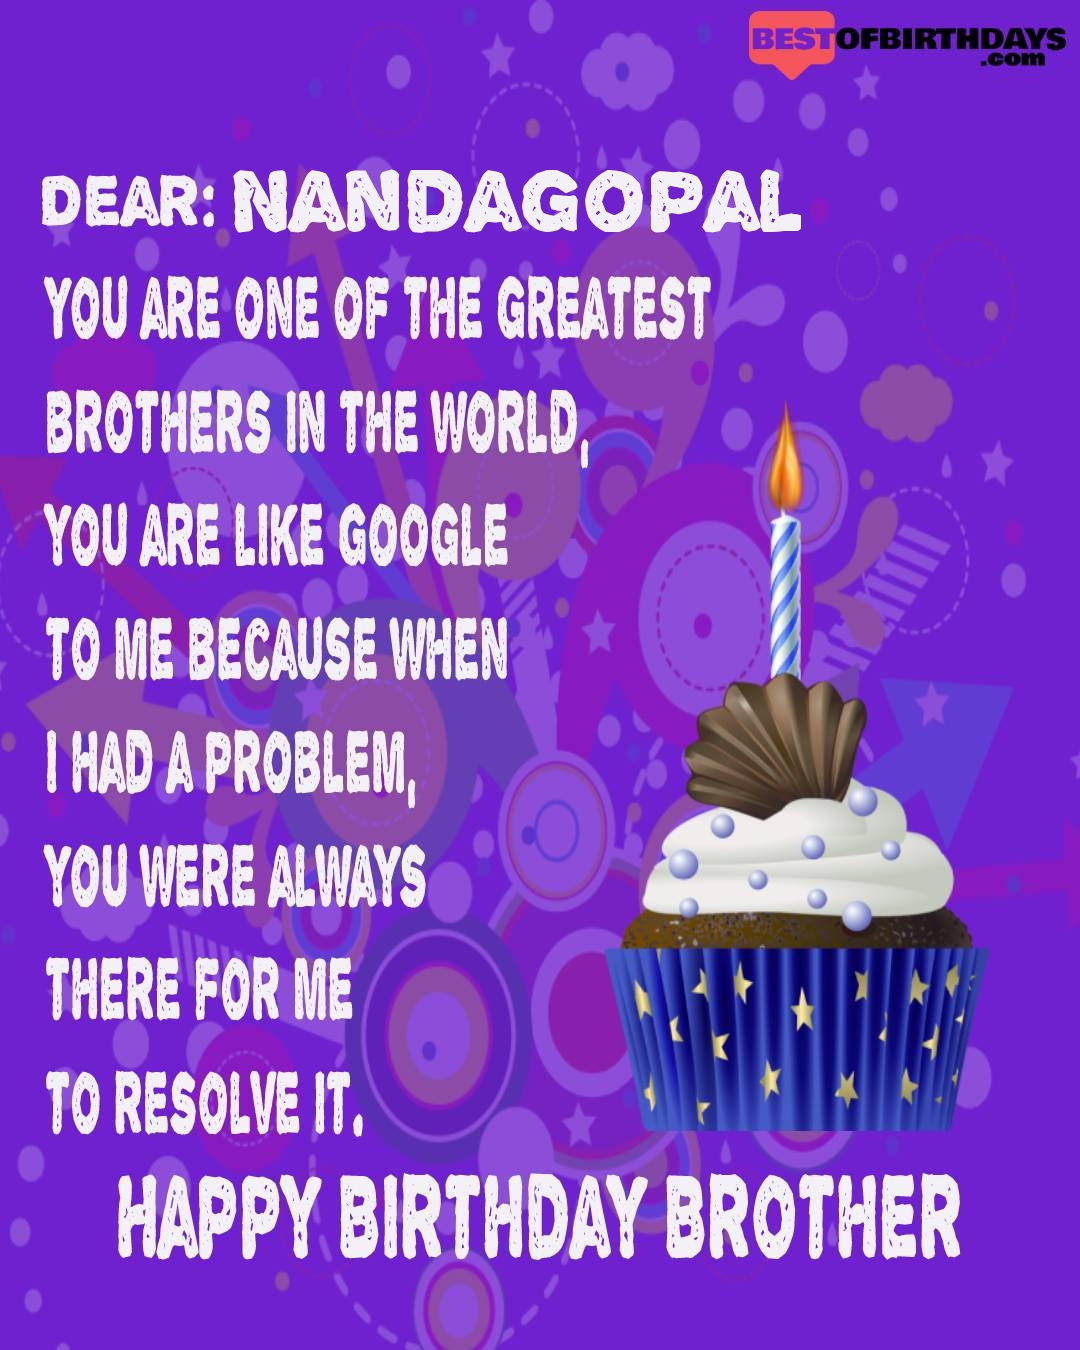 Happy birthday nandagopal bhai brother bro